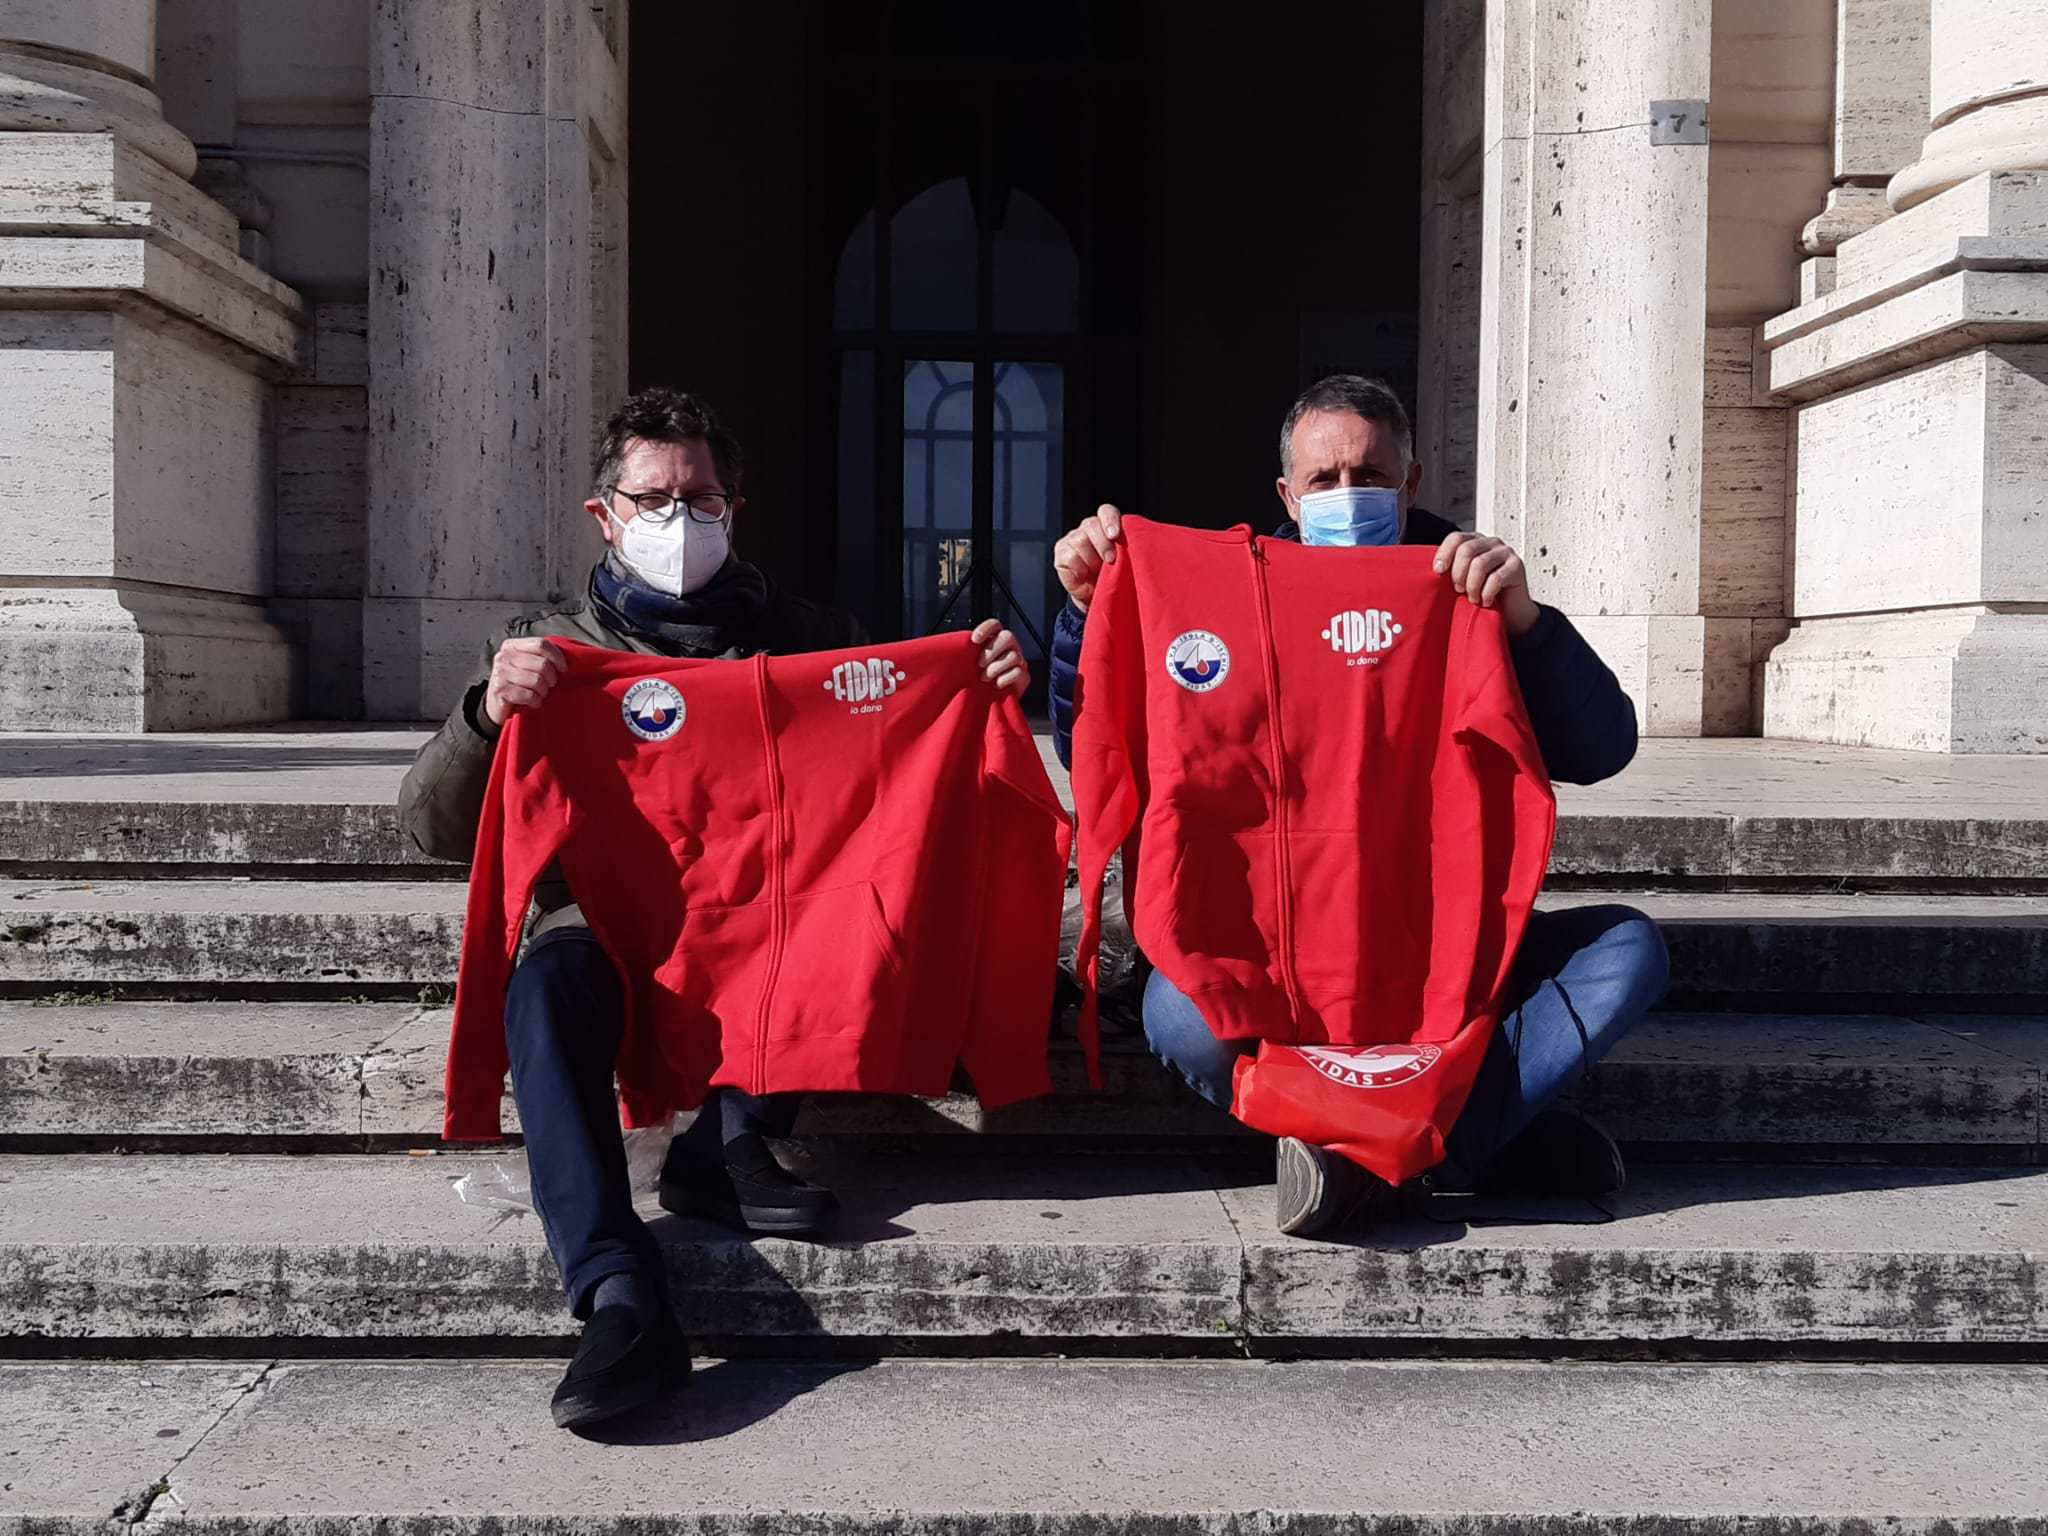 Emergenza sangue in Campania. Tanti donatori dopo l’appello di Borrelli e Simioli